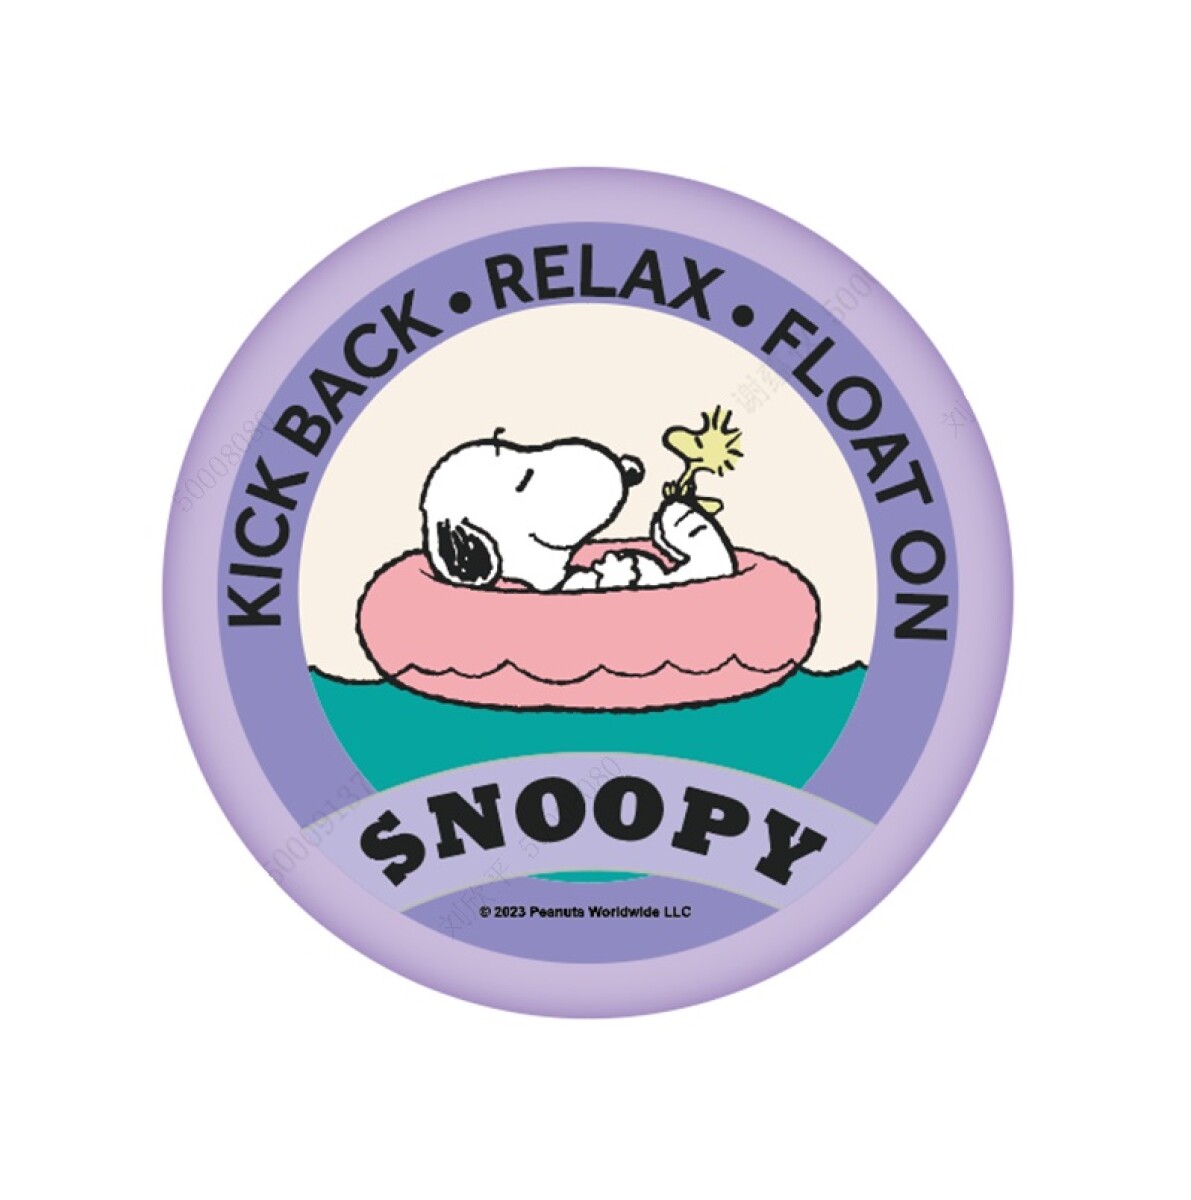 YOYO Snoopy - violeta 